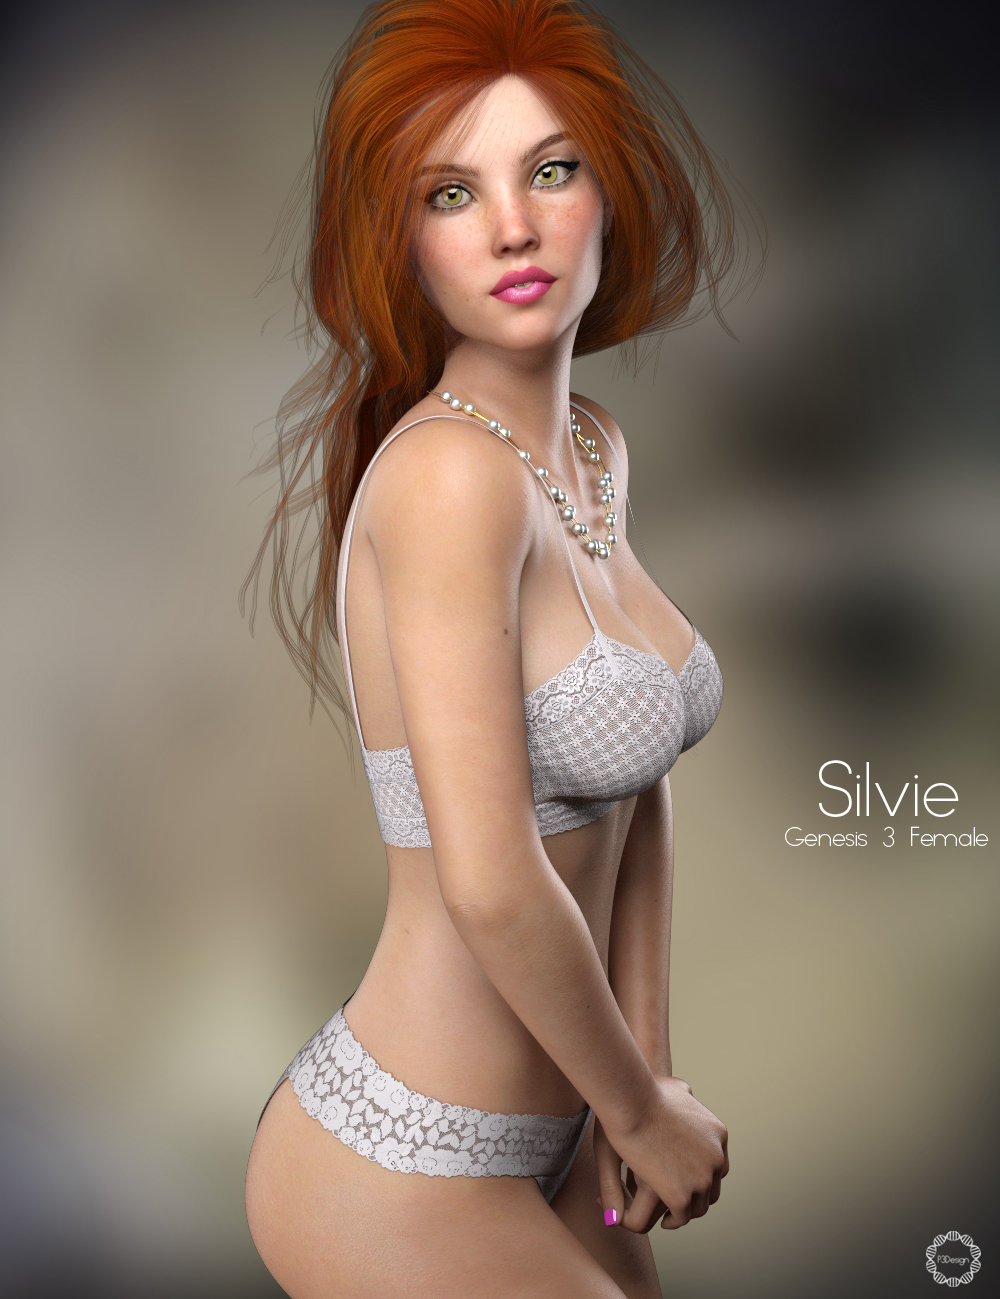 P3D Silvie by: P3Design, 3D Models by Daz 3D